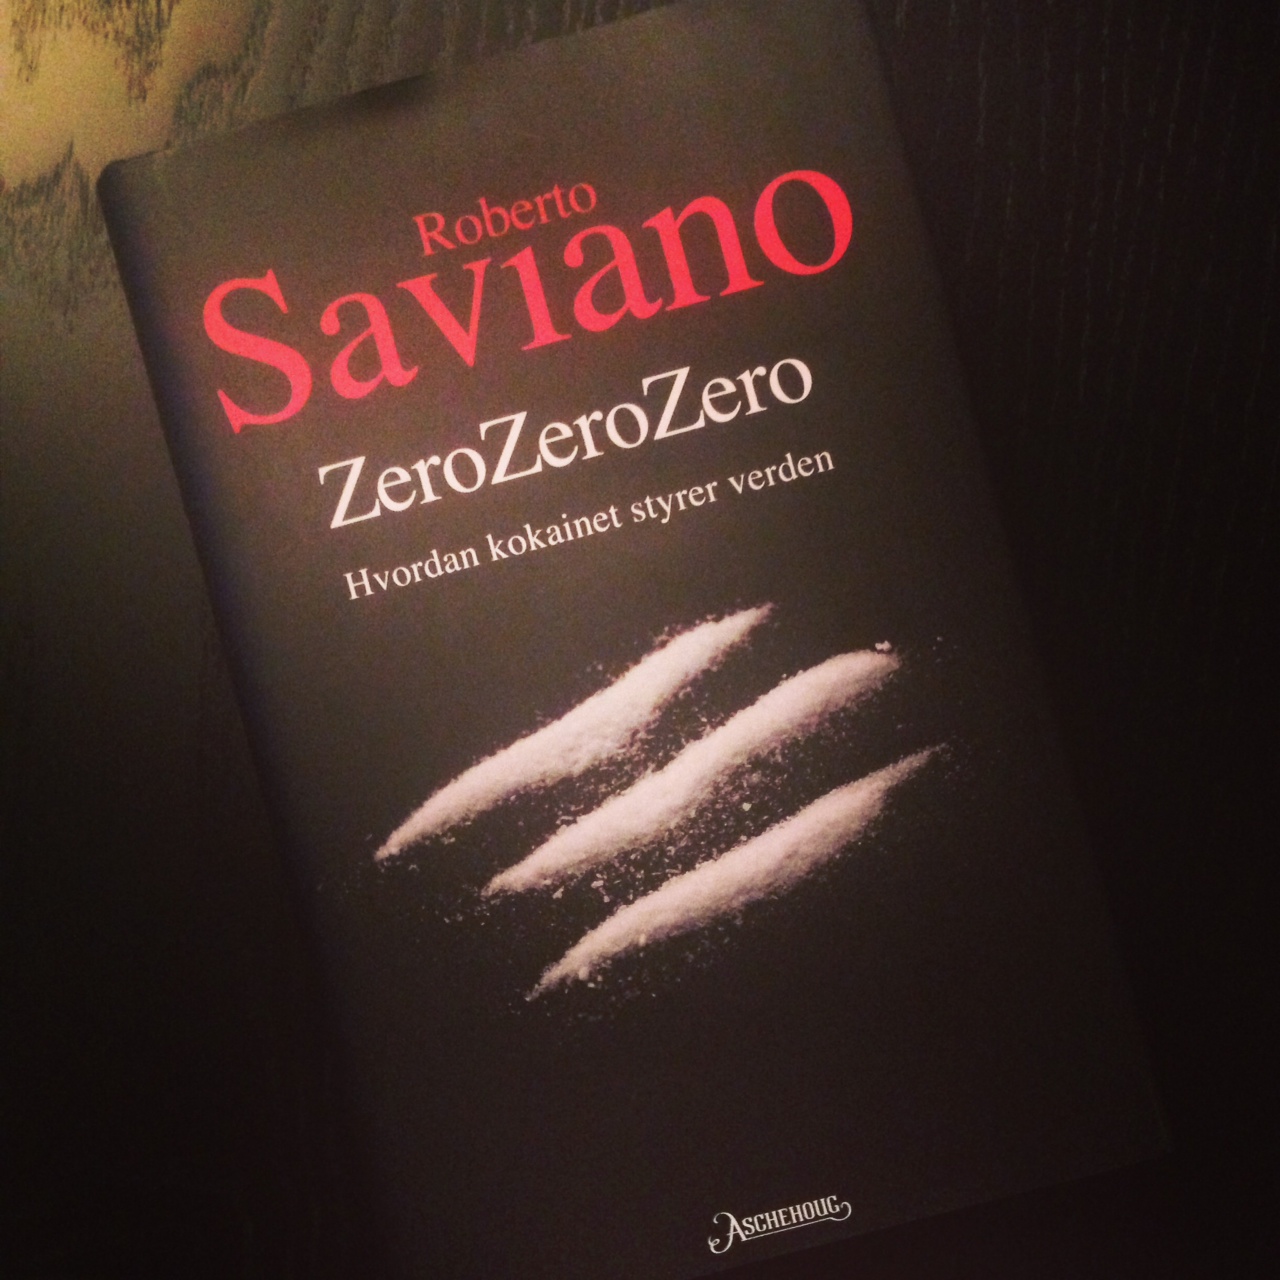 Roberto Saviano Zerozerozero